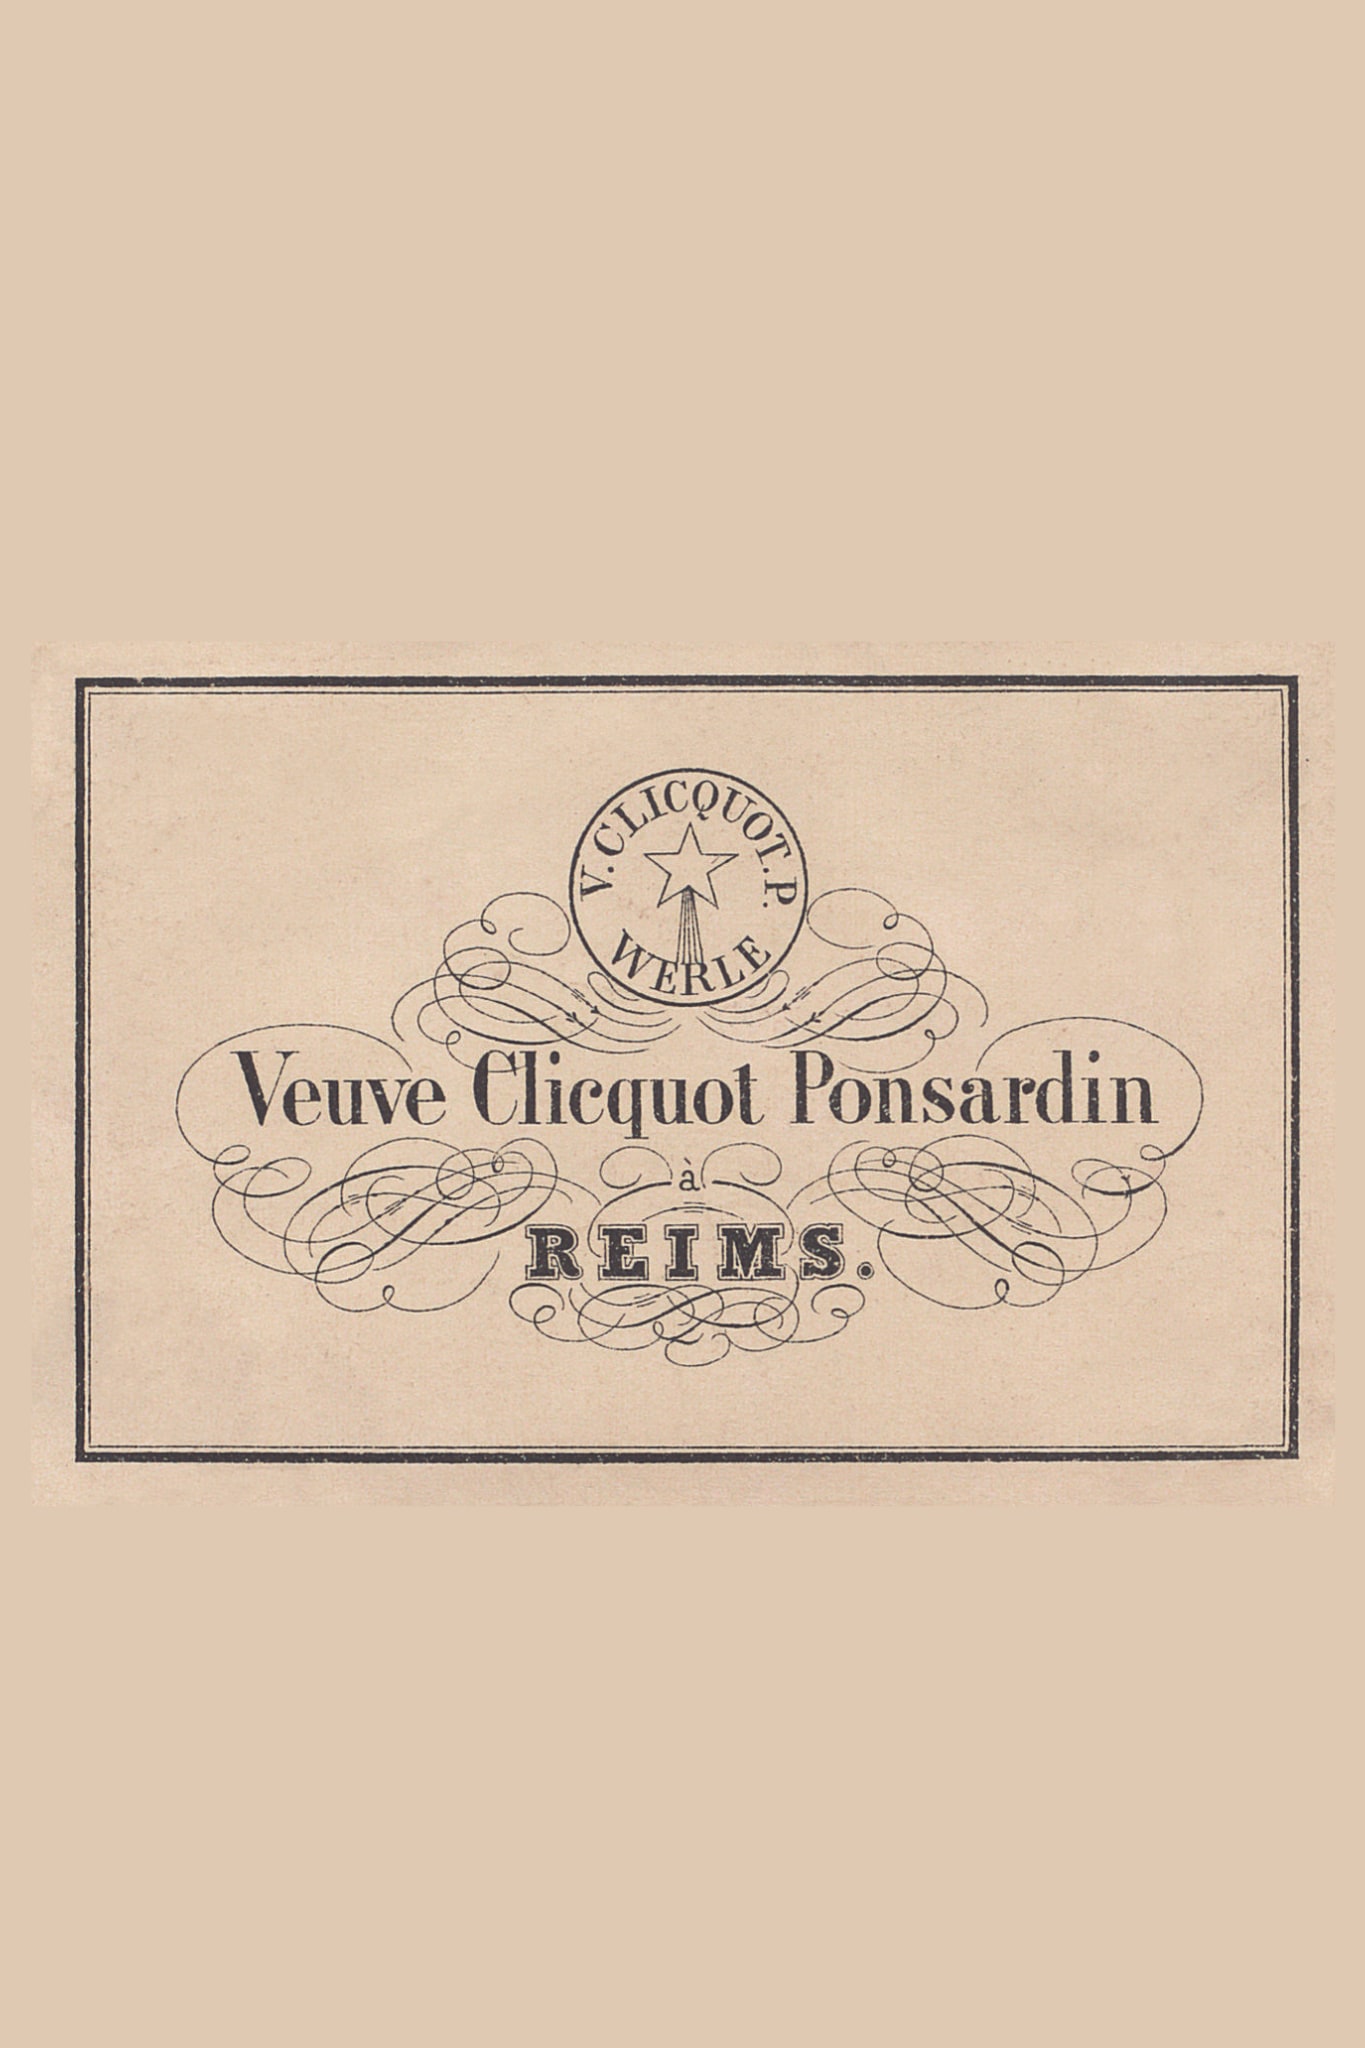 Seenk - Veuve Clicquot